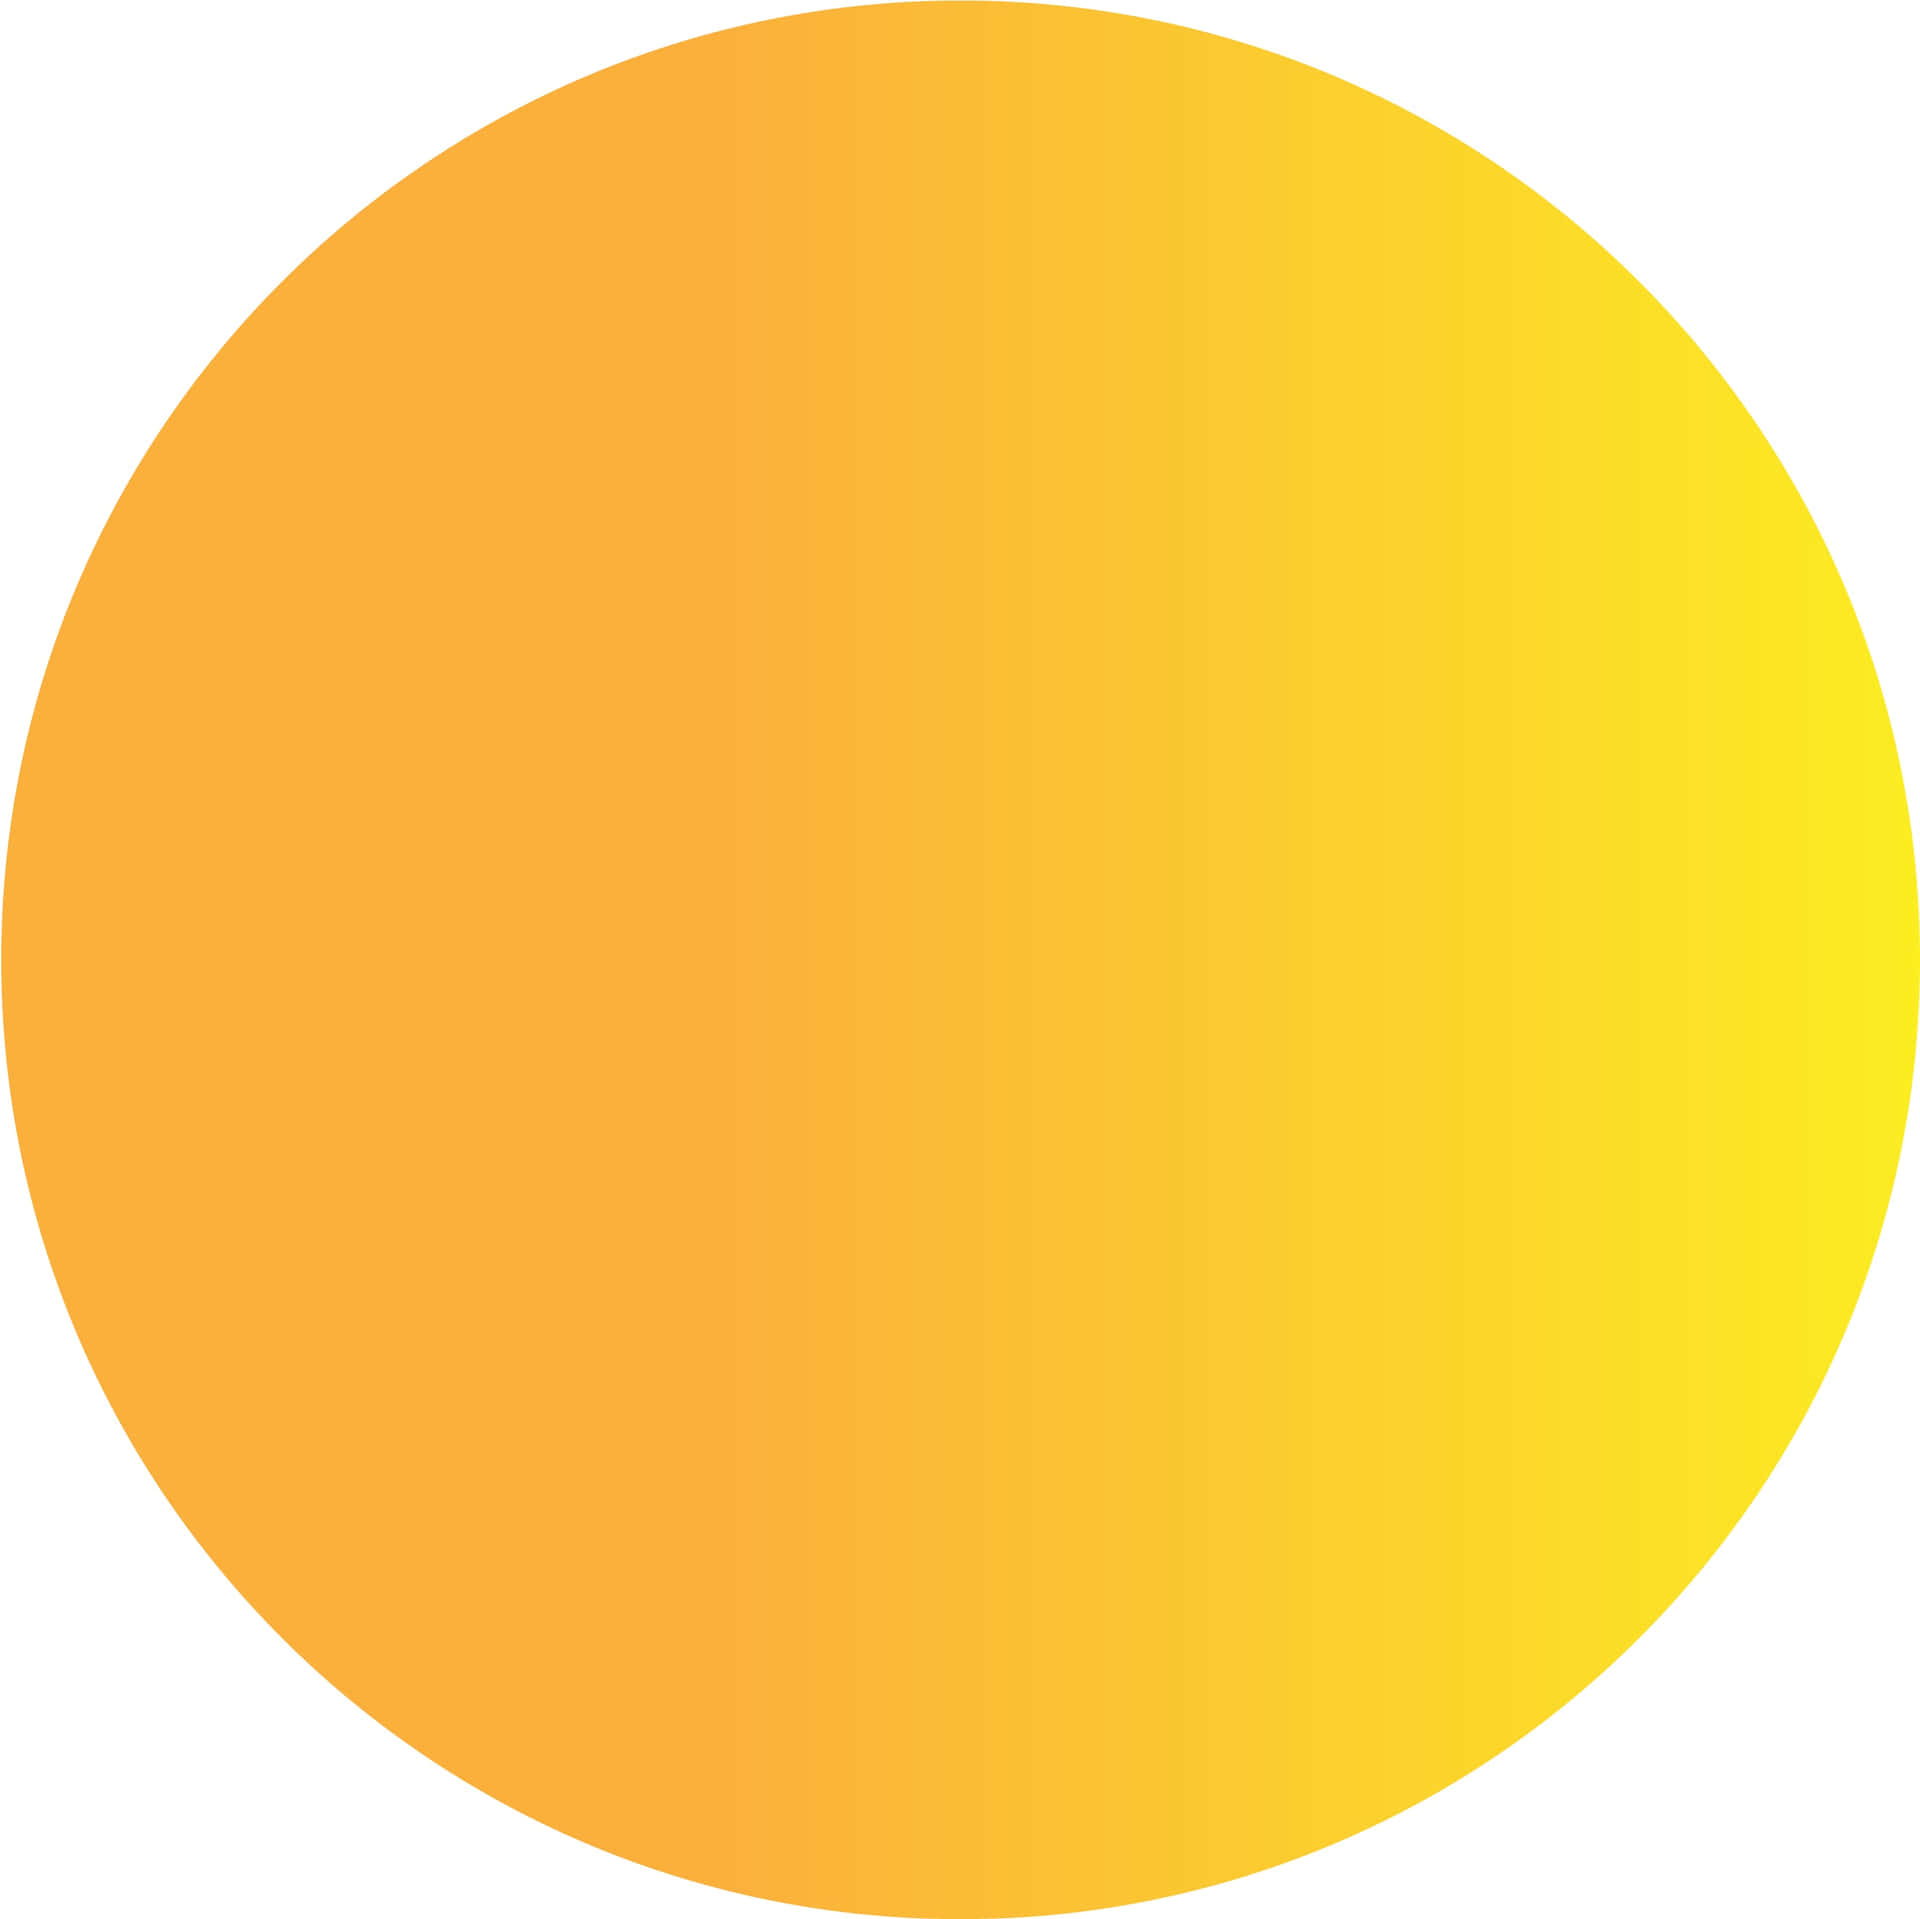 Yellow Circle Abstract Art Wallpaper Wallpaper